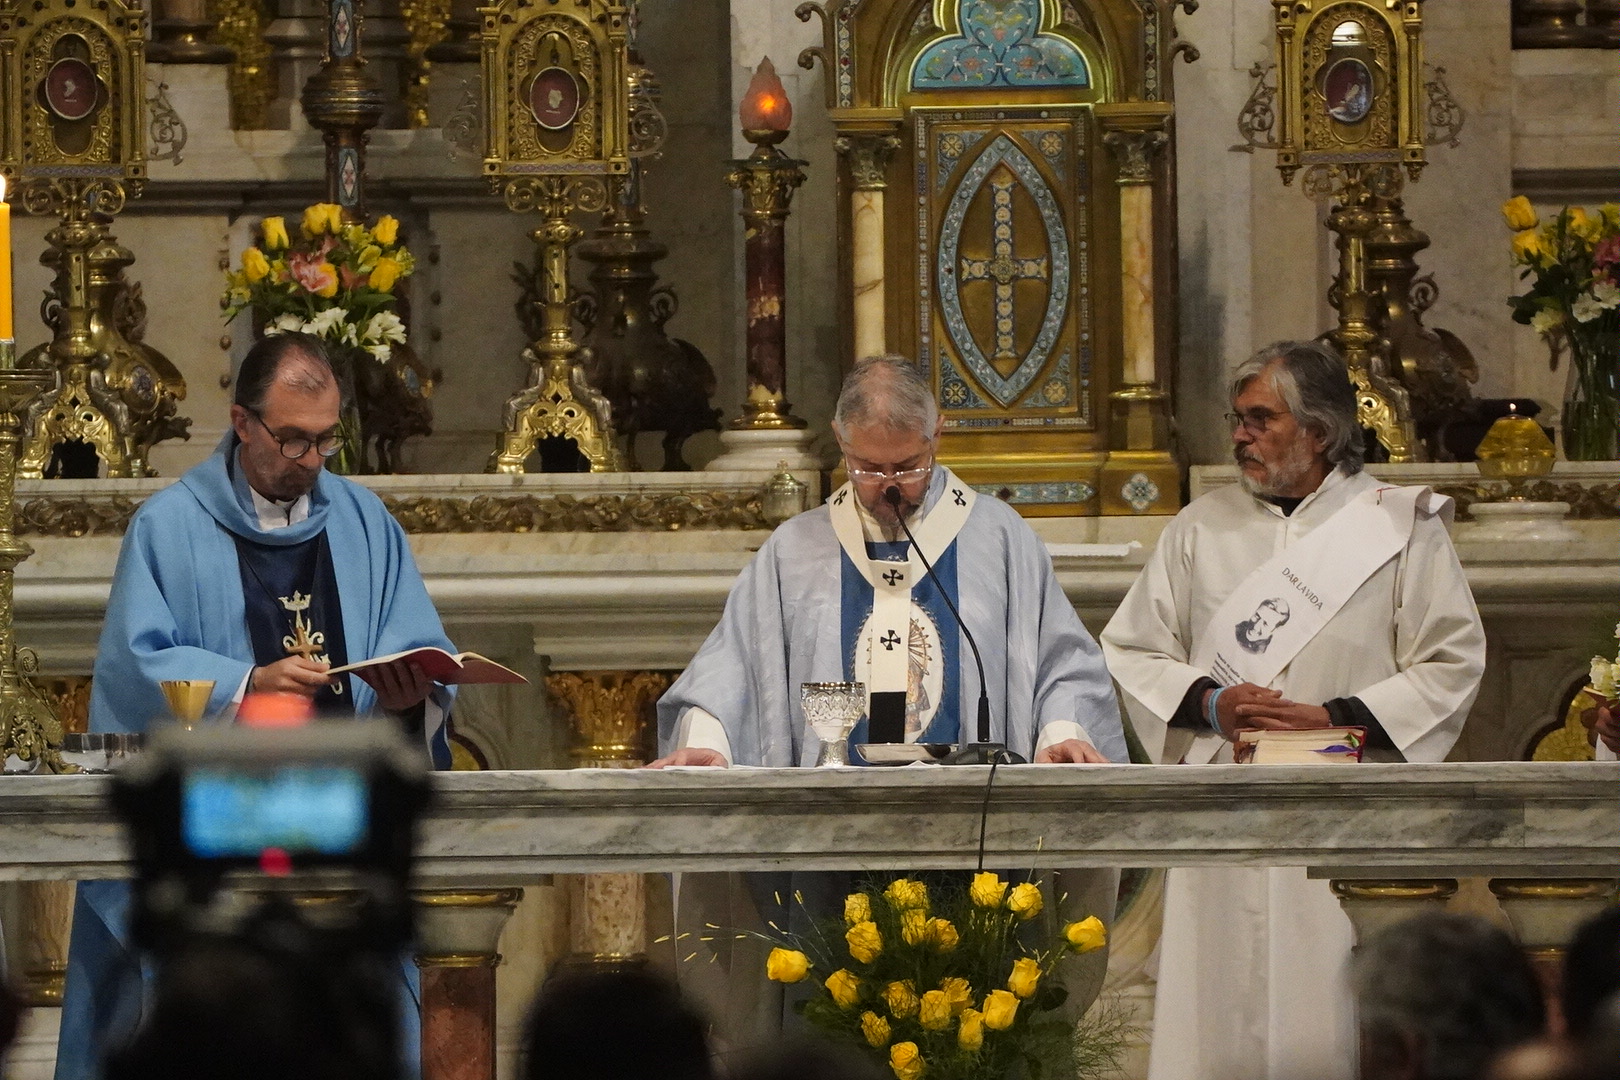 La misa en la Basílica de Luján estuvo a cargo del monseñor Jorge Eduardo Scheinig, el responsable de la arquidiócesis Mercedes-Luján